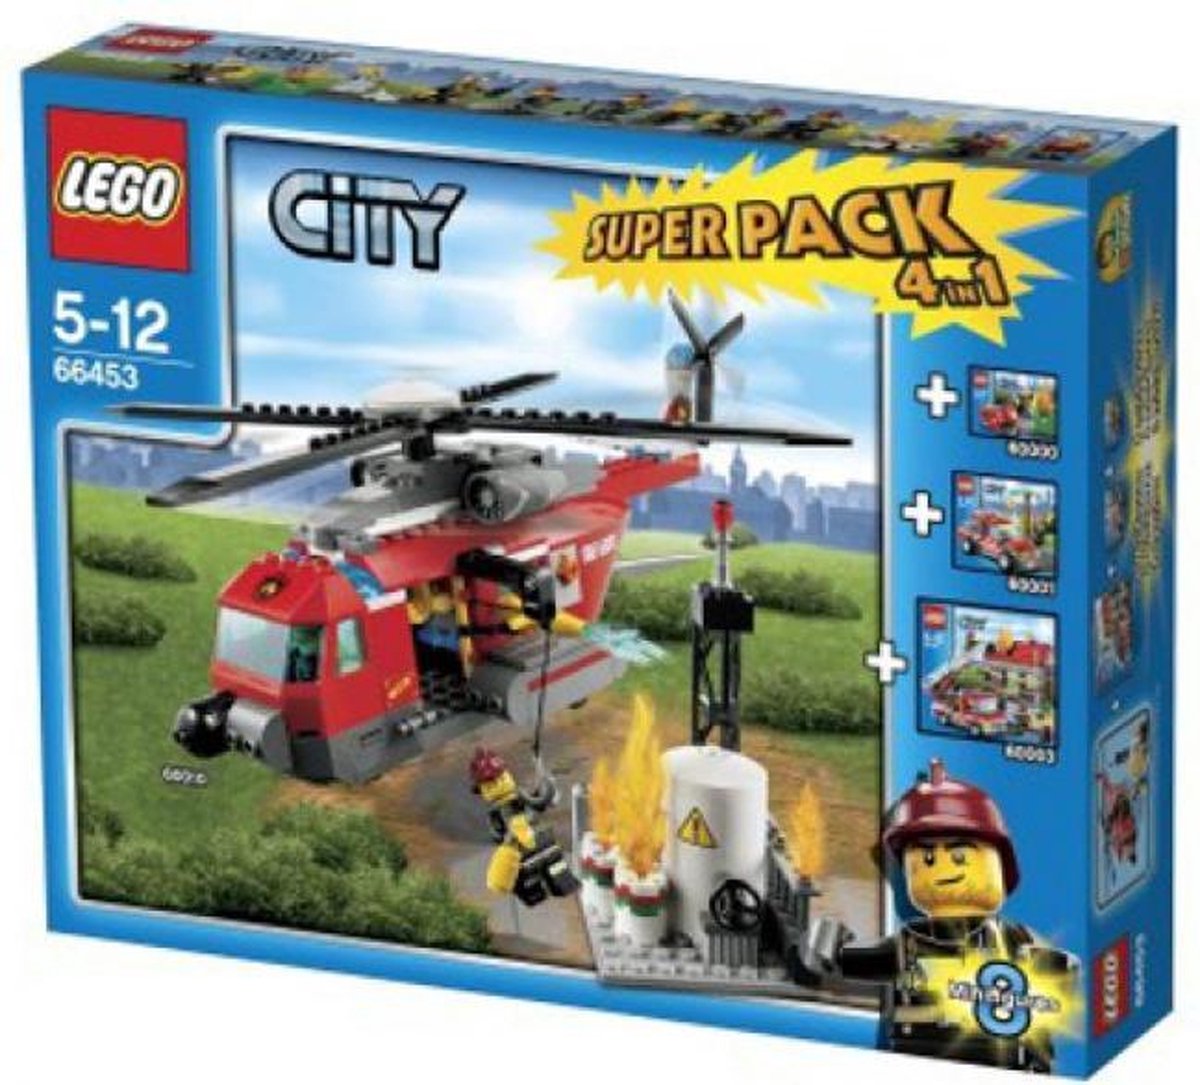 LEGO 66453 City superpack vuur 4 in 1 | bol.com